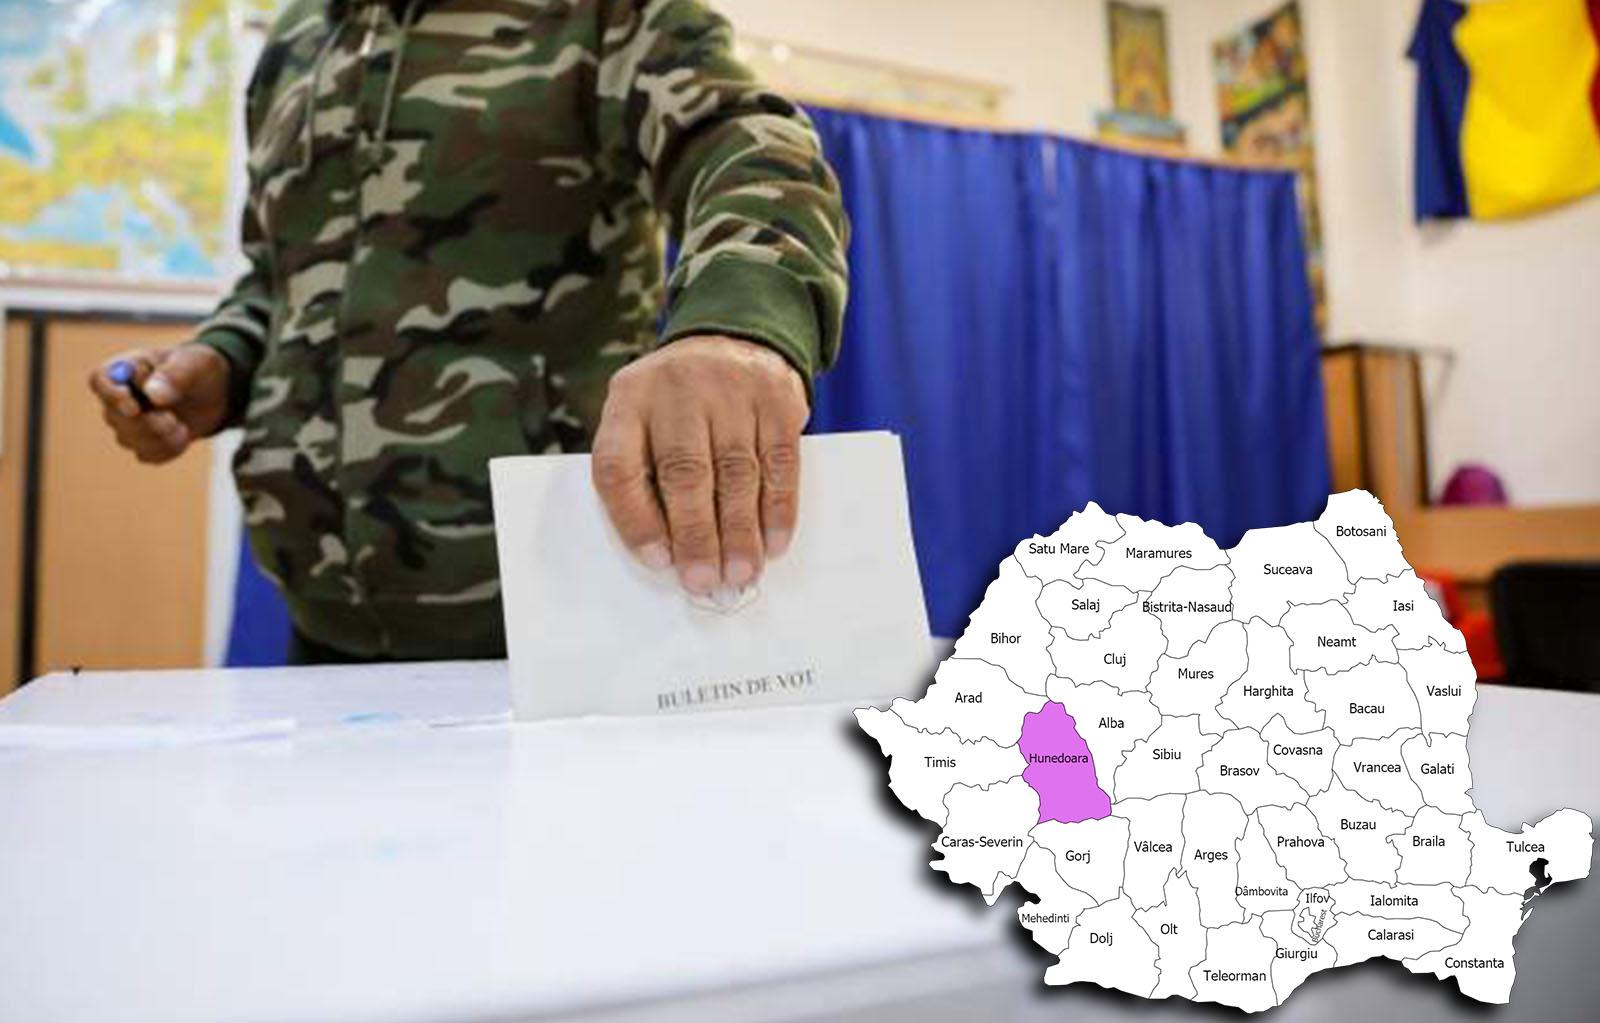 Rezultate alegeri parlamentare 2020 în județul Hunedoara. Cine câștigă alegerile pentru Senat și Camera Deputaților